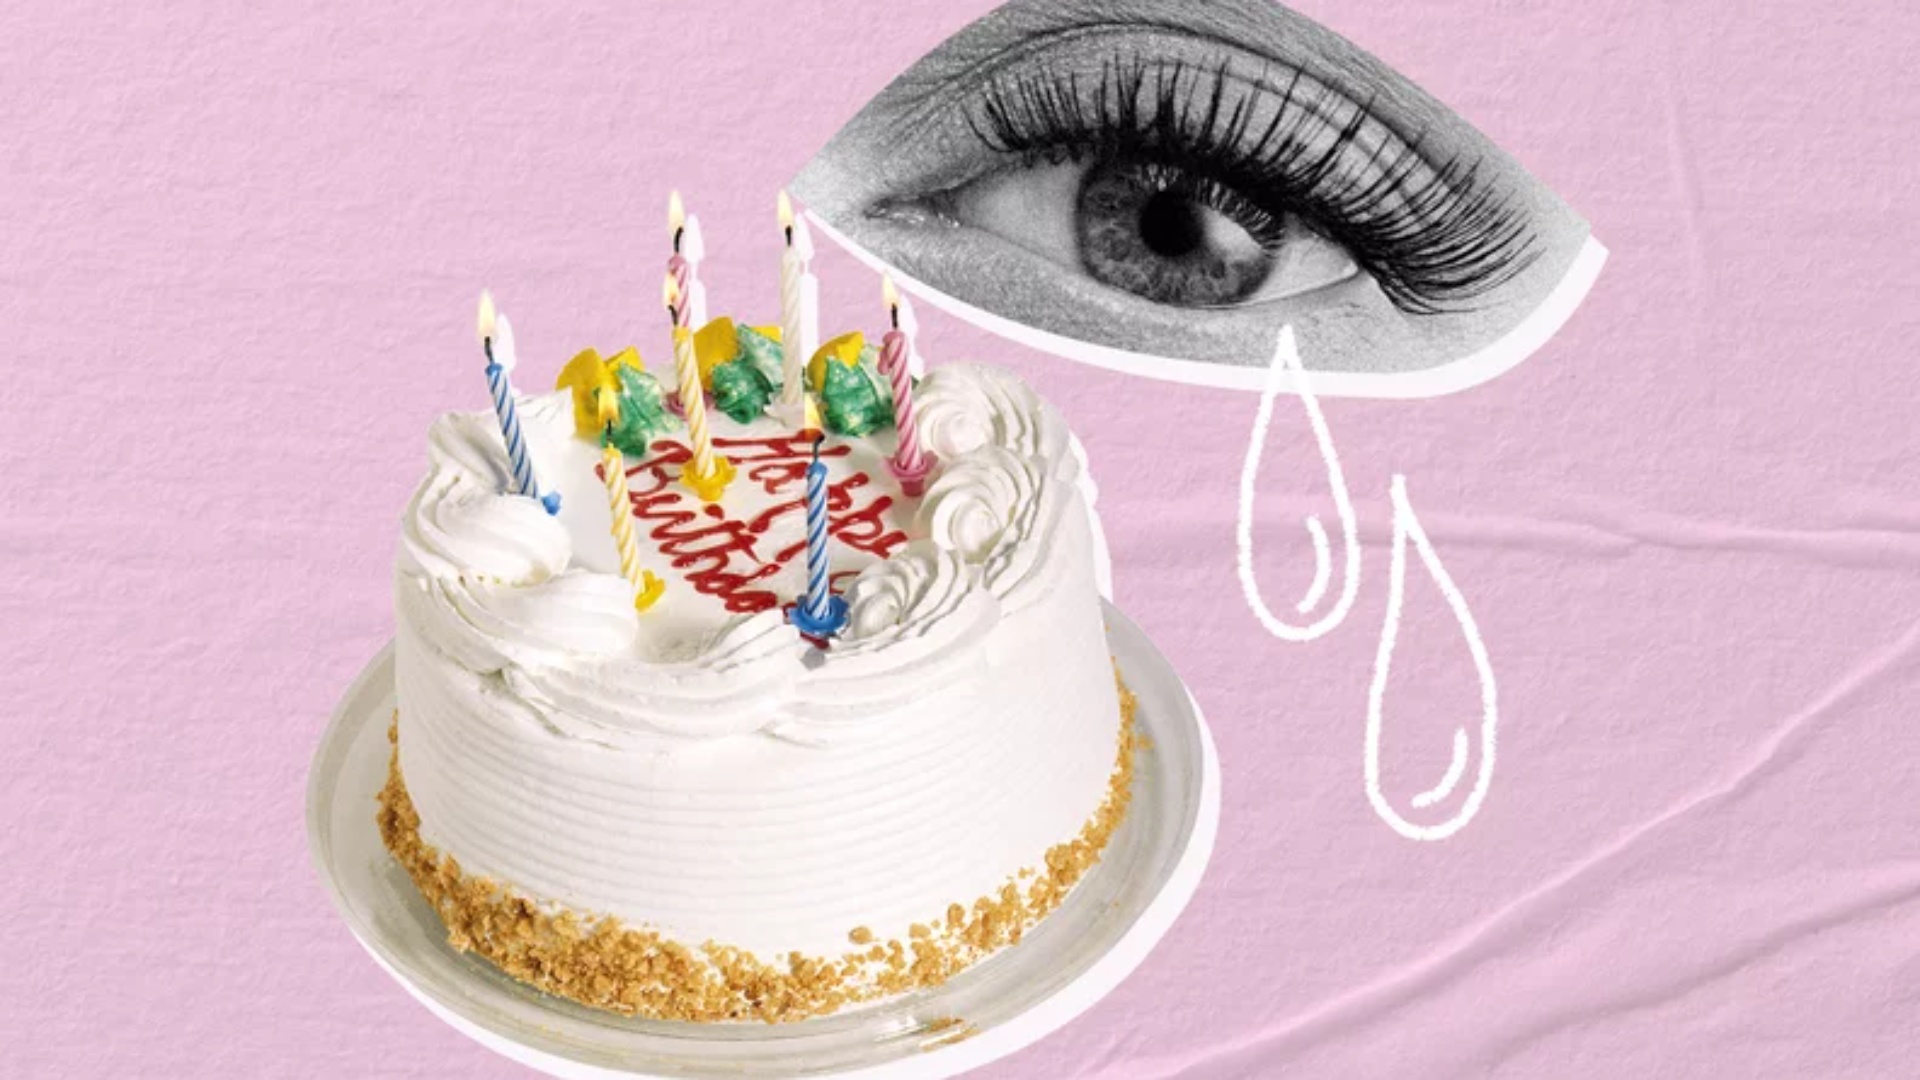 Për ju që nuk ndaloni dot së qari në ditëlindjen tuaj, ky është artikulli i duhur për ju!